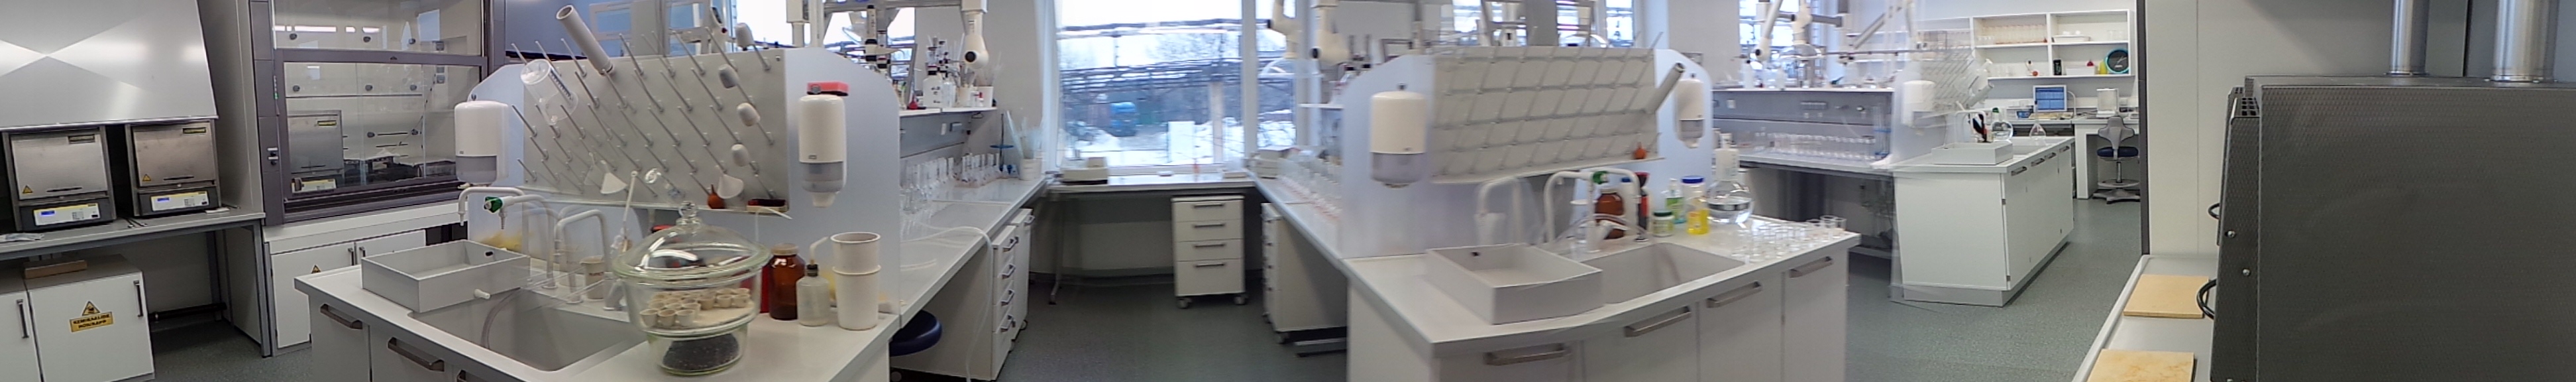 Molycorp Laboratory 2012 panorama